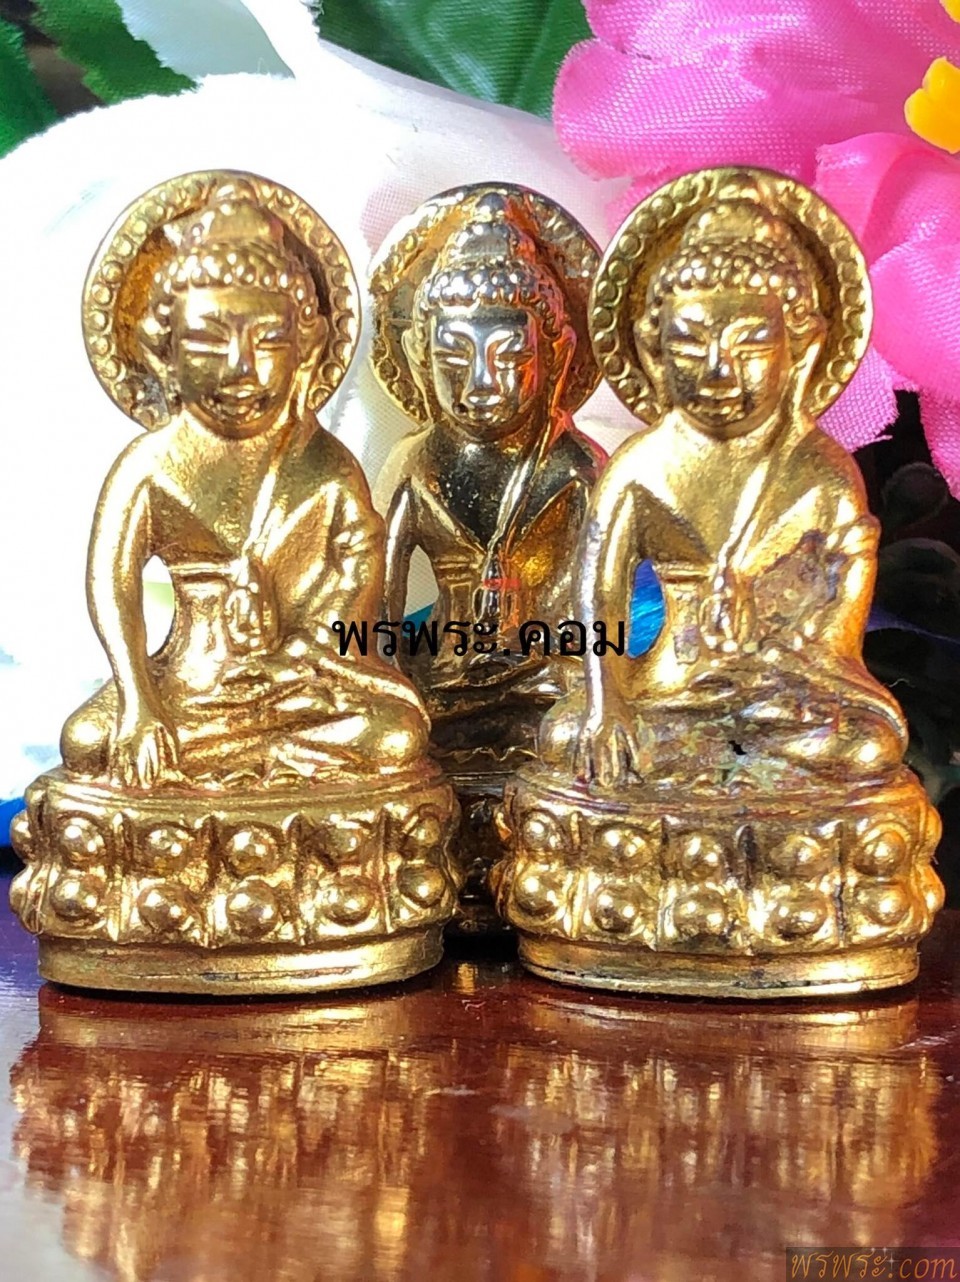 พระกริ่งรัชกาล พศ.๒๔๕๑ ประภามลฑล หลัง พระบรมฉายาลักษณ์ ใต้ฐาน ครุต หงส์ มังกร ศิลปแบบ นูน สูง เปียกทองPhra Kring Phra Kring Rama 2408 B.E. Prabhamonthon, back of the royal image, under the base of the royal image, embossed, wet gold